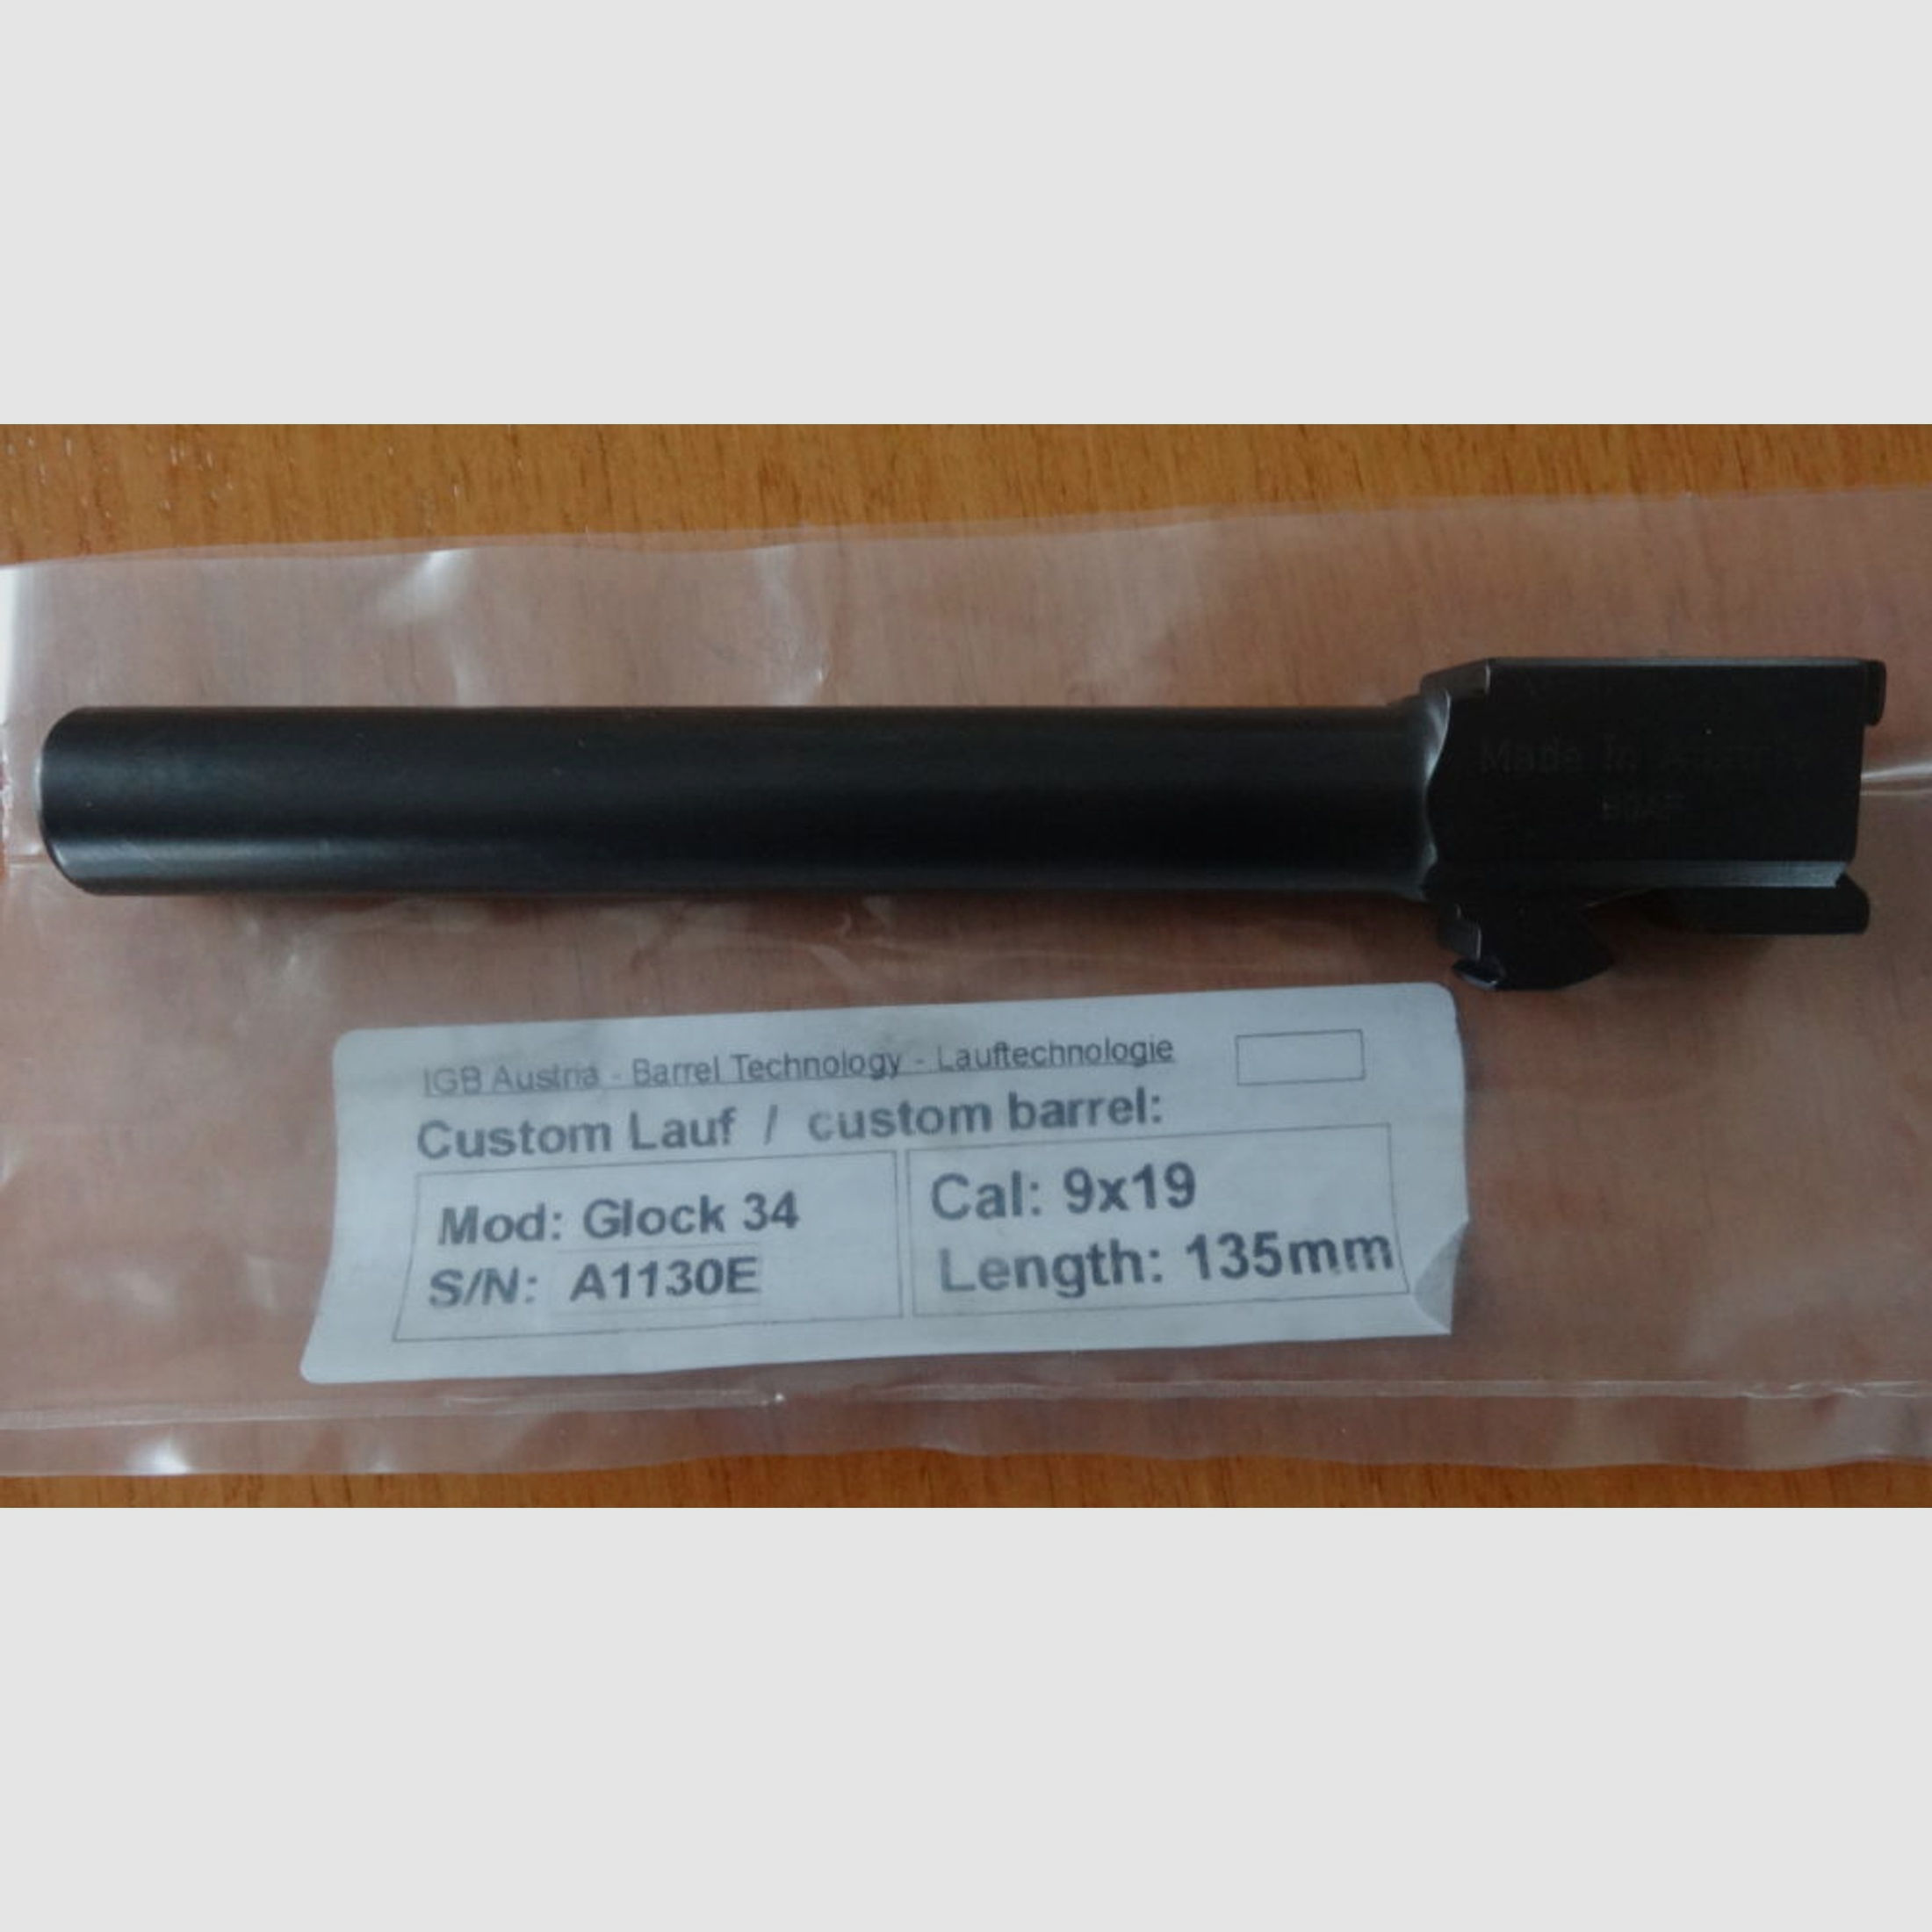 Glock-IBG	 IGB Kaliberwechsellauf 9mm oder 357 Sig für Glock 40S&W Pistole